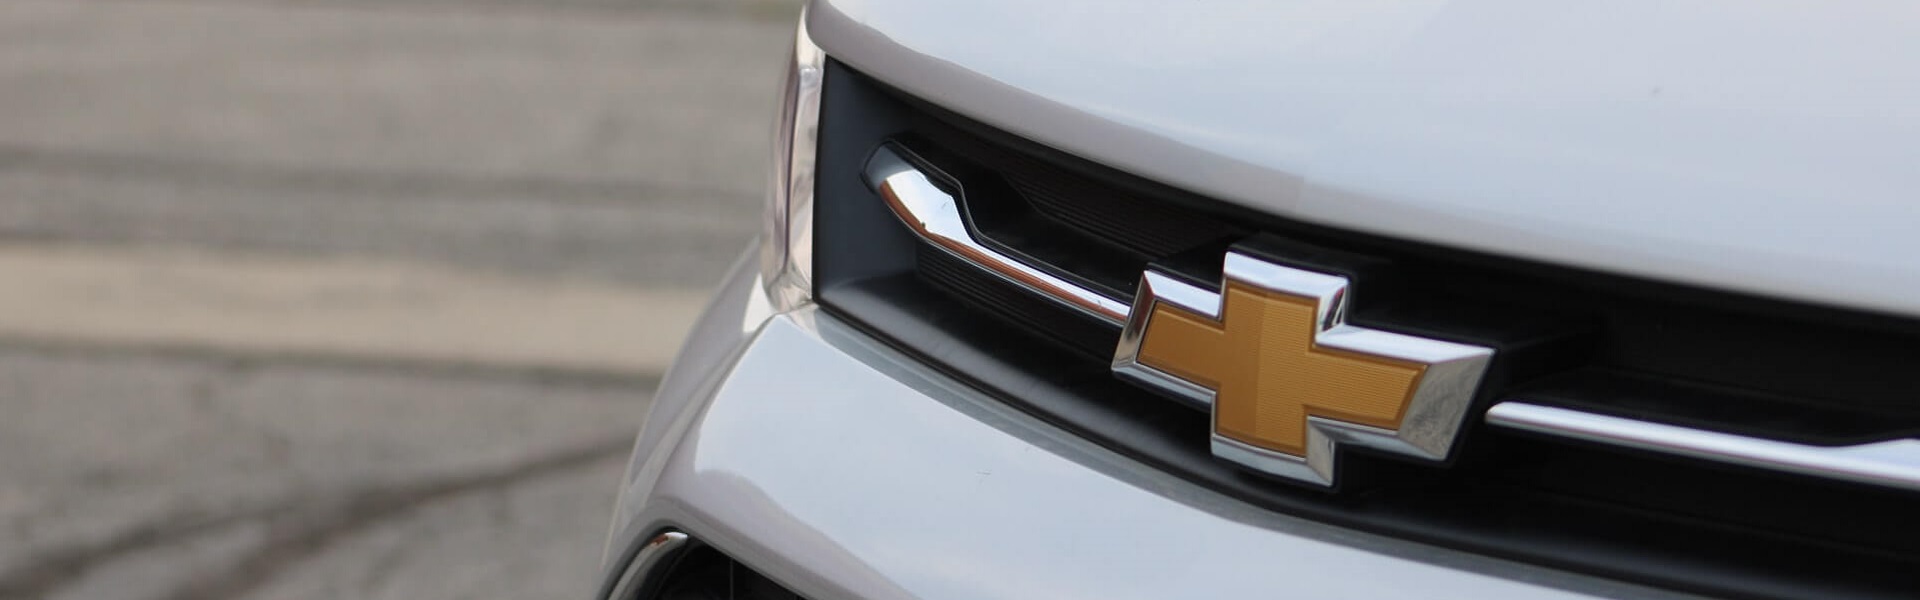 Renault delovi | Daewoo i Chevrolet delovi